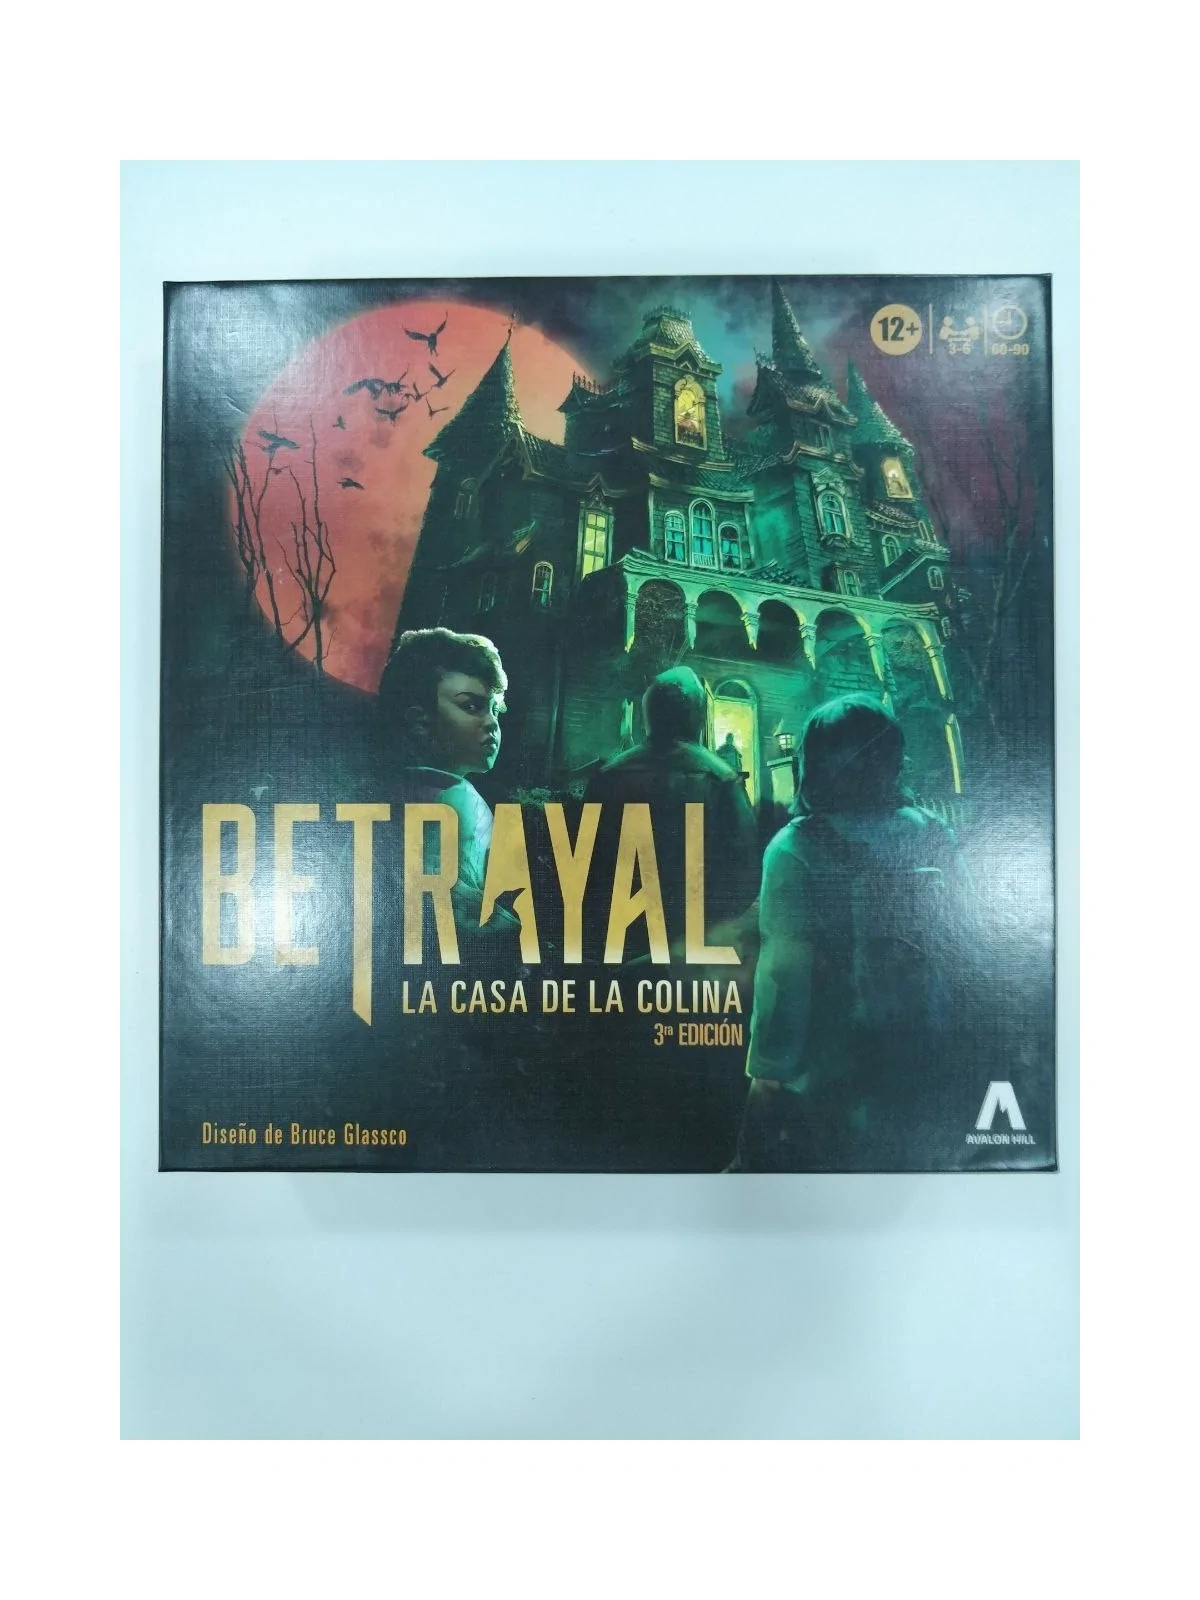 Comprar Betrayal [SEGUNDA MANO] barato al mejor precio 20,00 € de Asmo